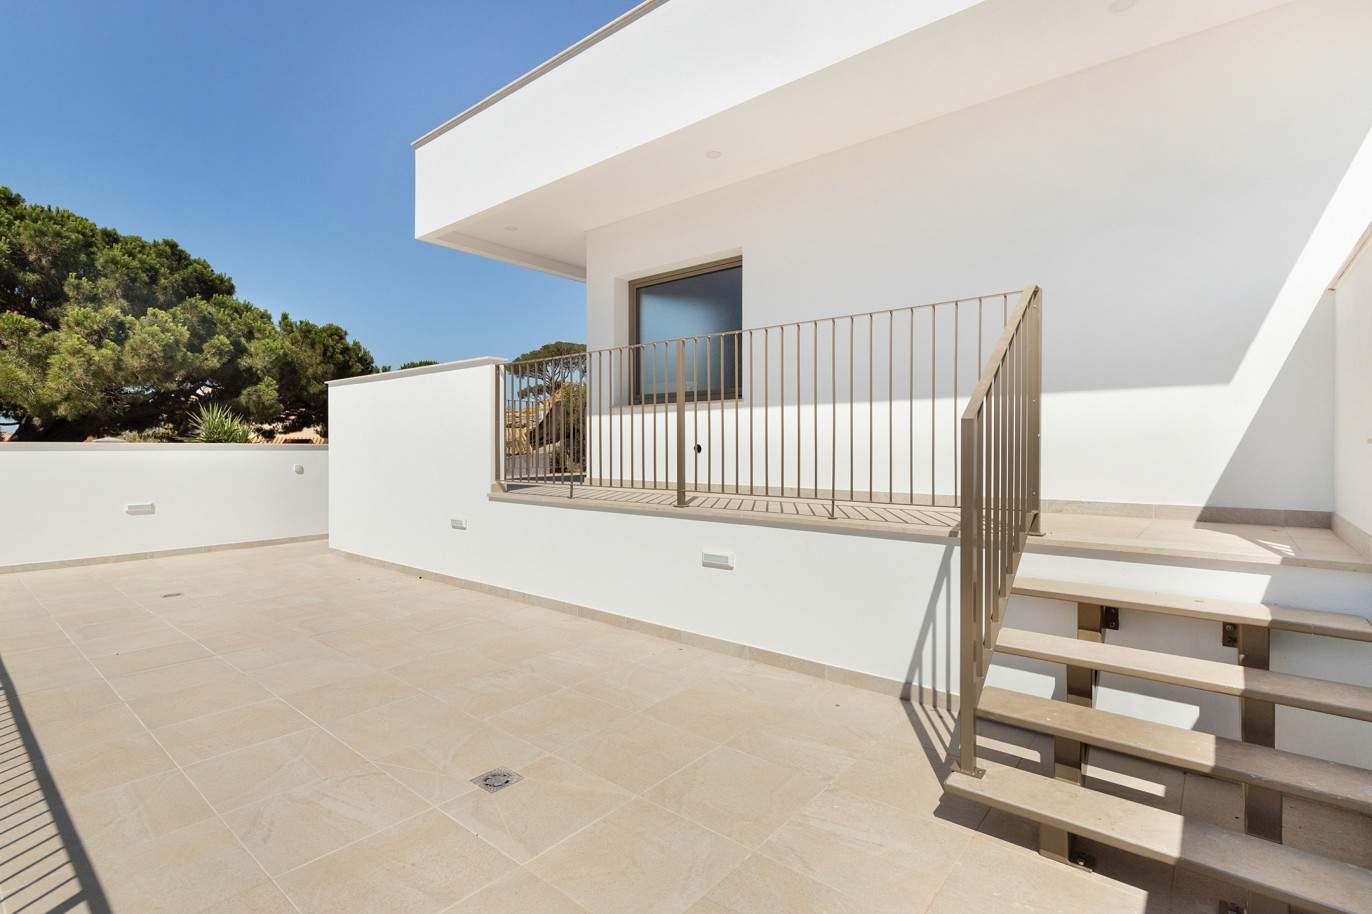 Villa de 5 dormitorios, de nueva construcción, en venta en Albufeira, Algarve_203244